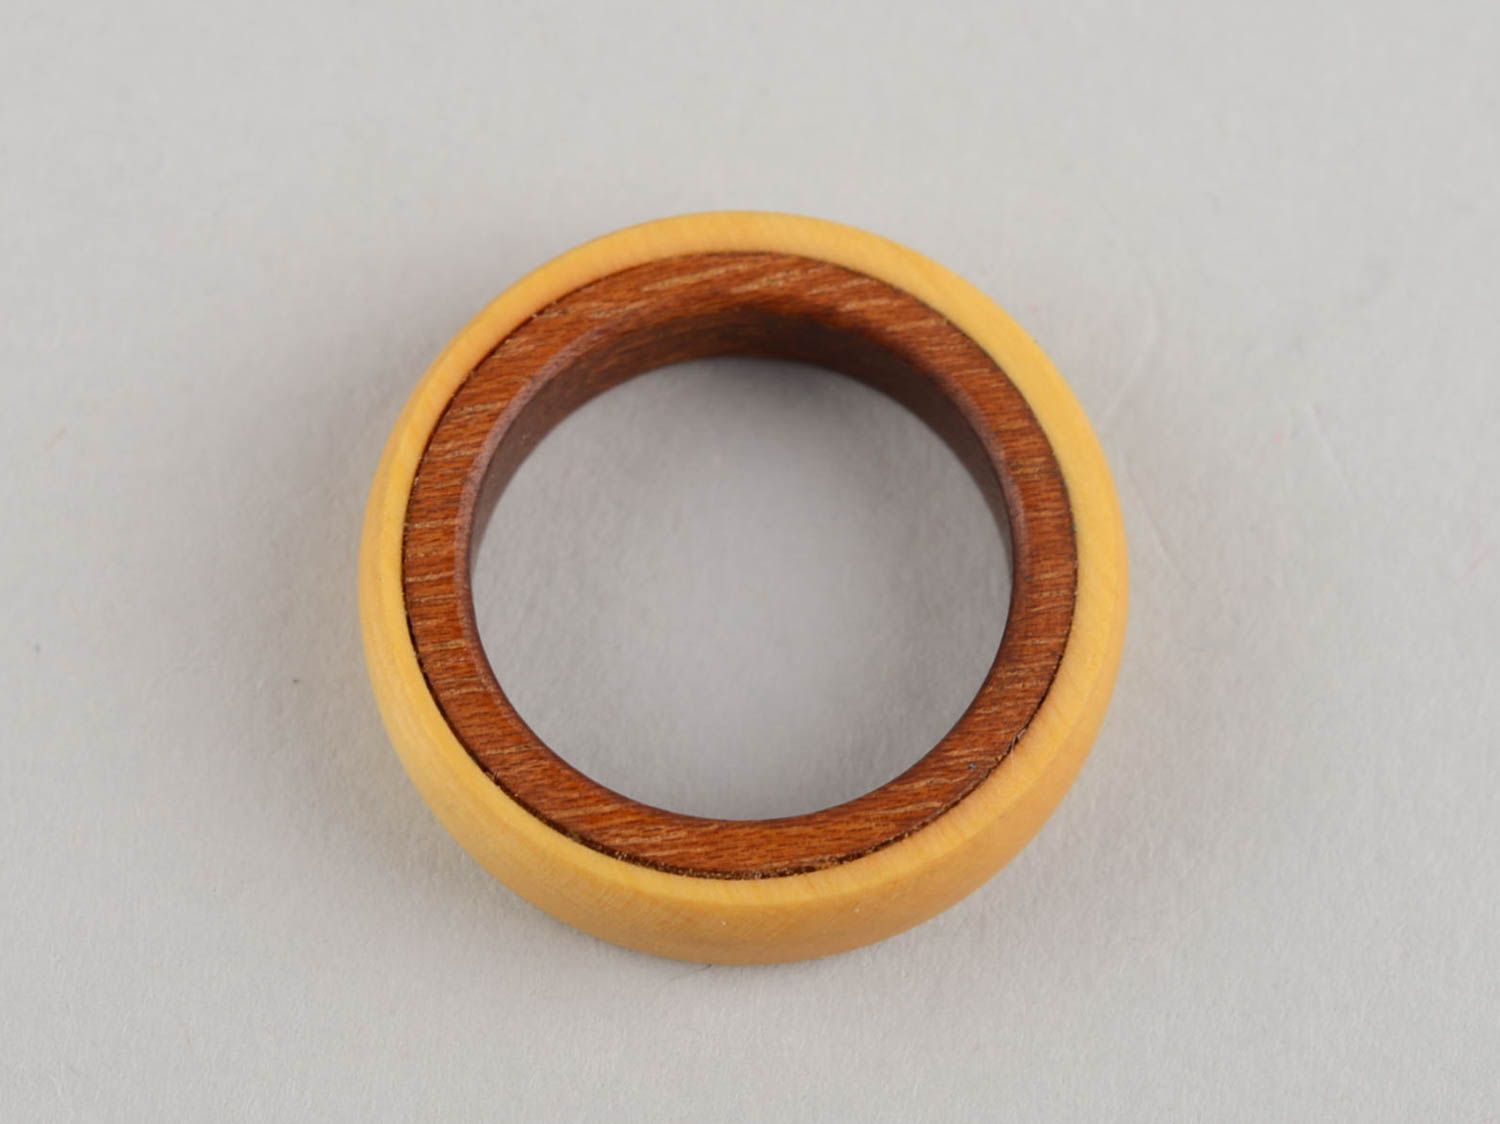 Уникальное необычное деревянное кольцо в эко стиле для мужчин и женщин хэнд мэйд фото 3